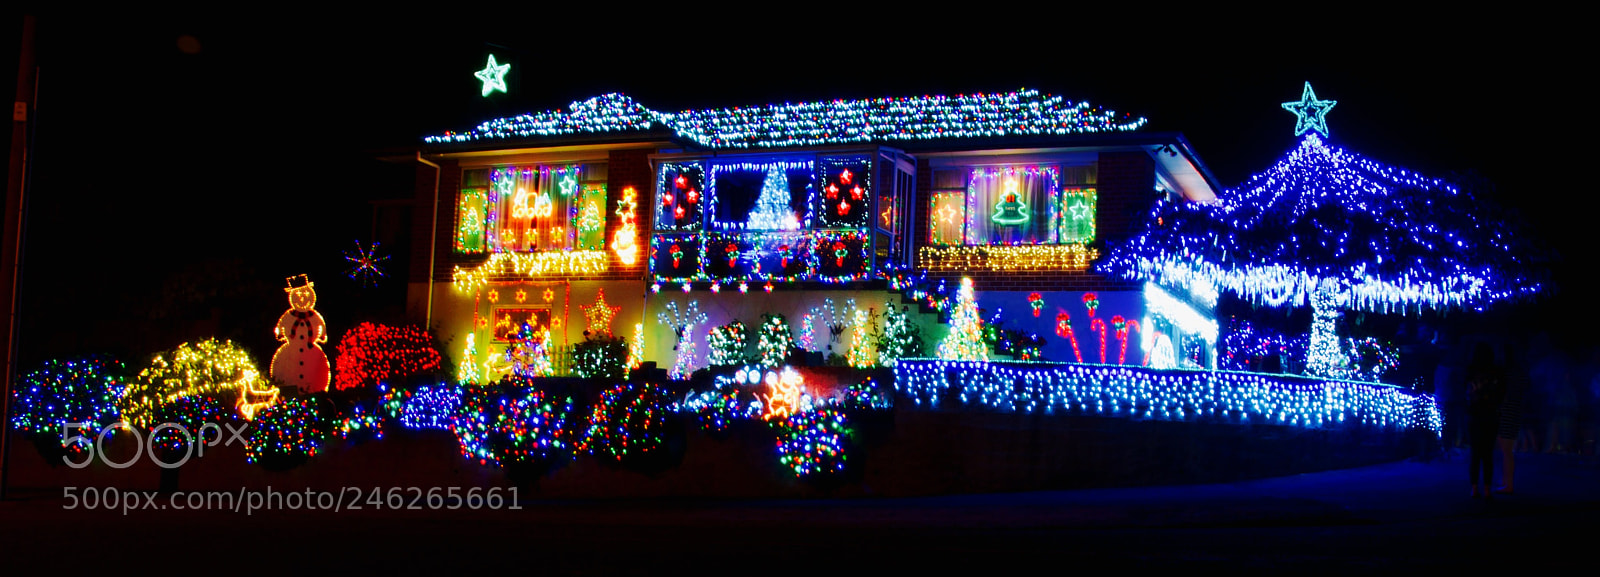 Nikon D90 sample photo. Christmas lights photography